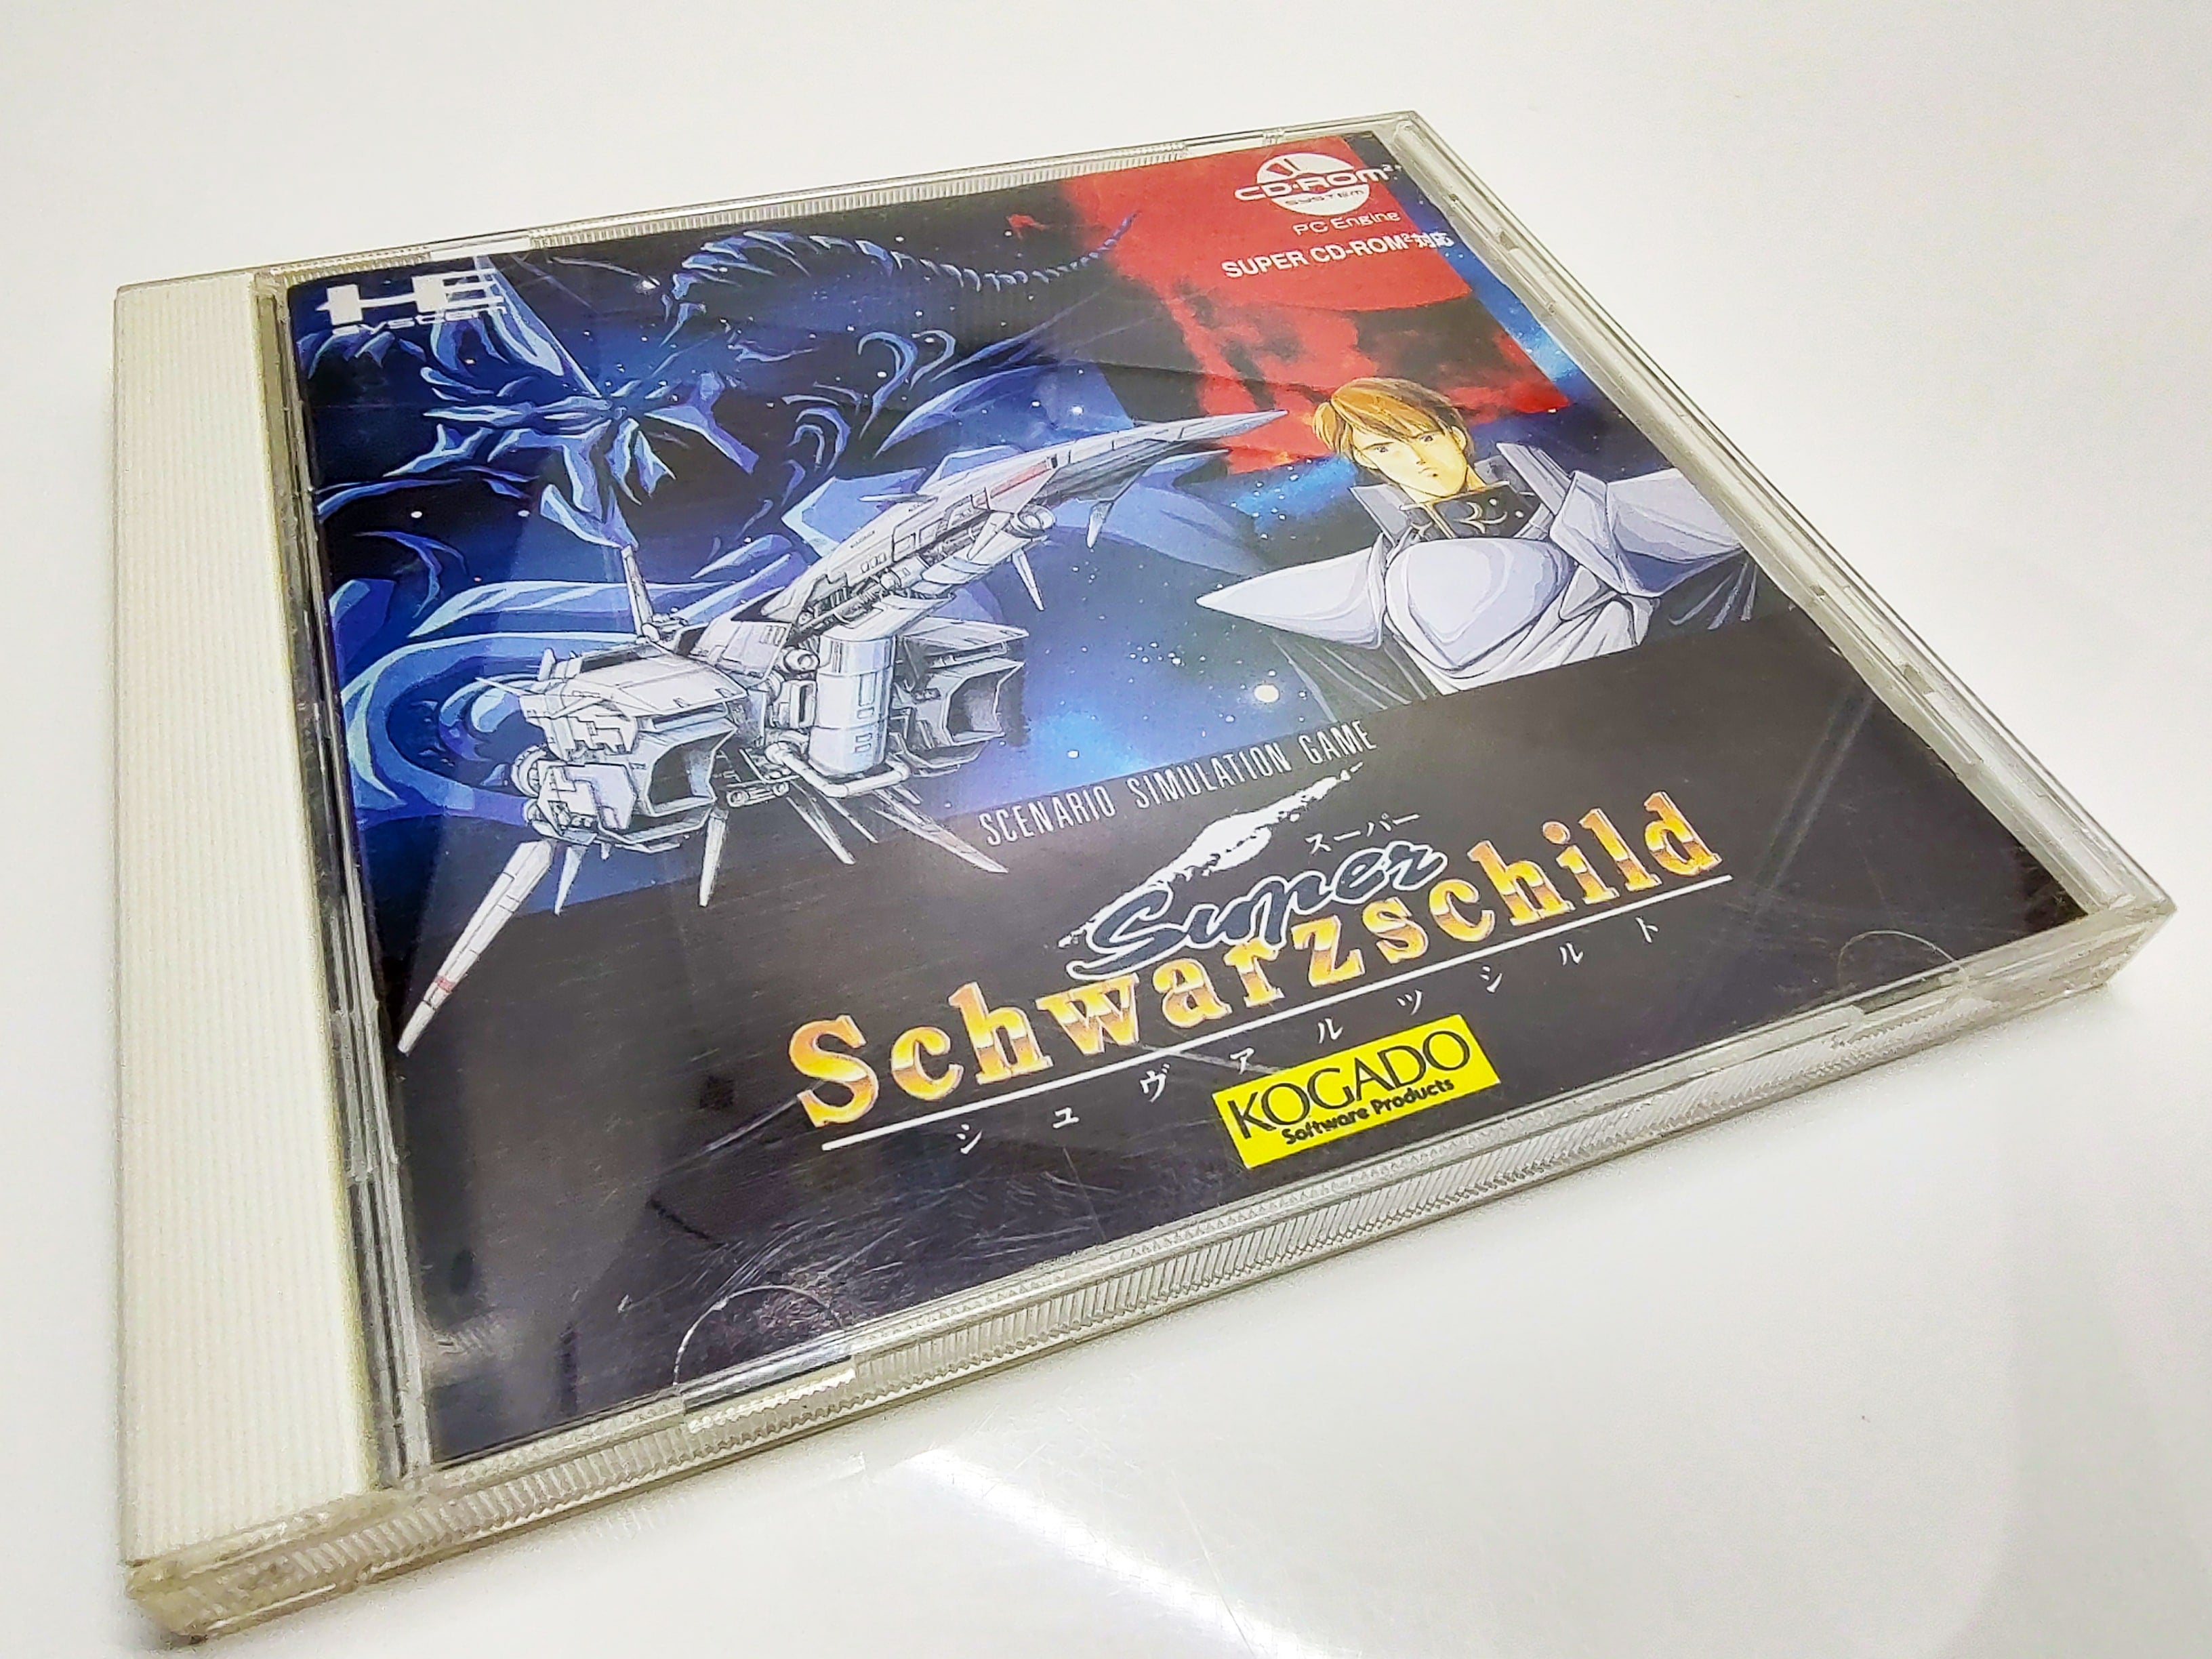 Super Schwarzschild | PC Engine | Case